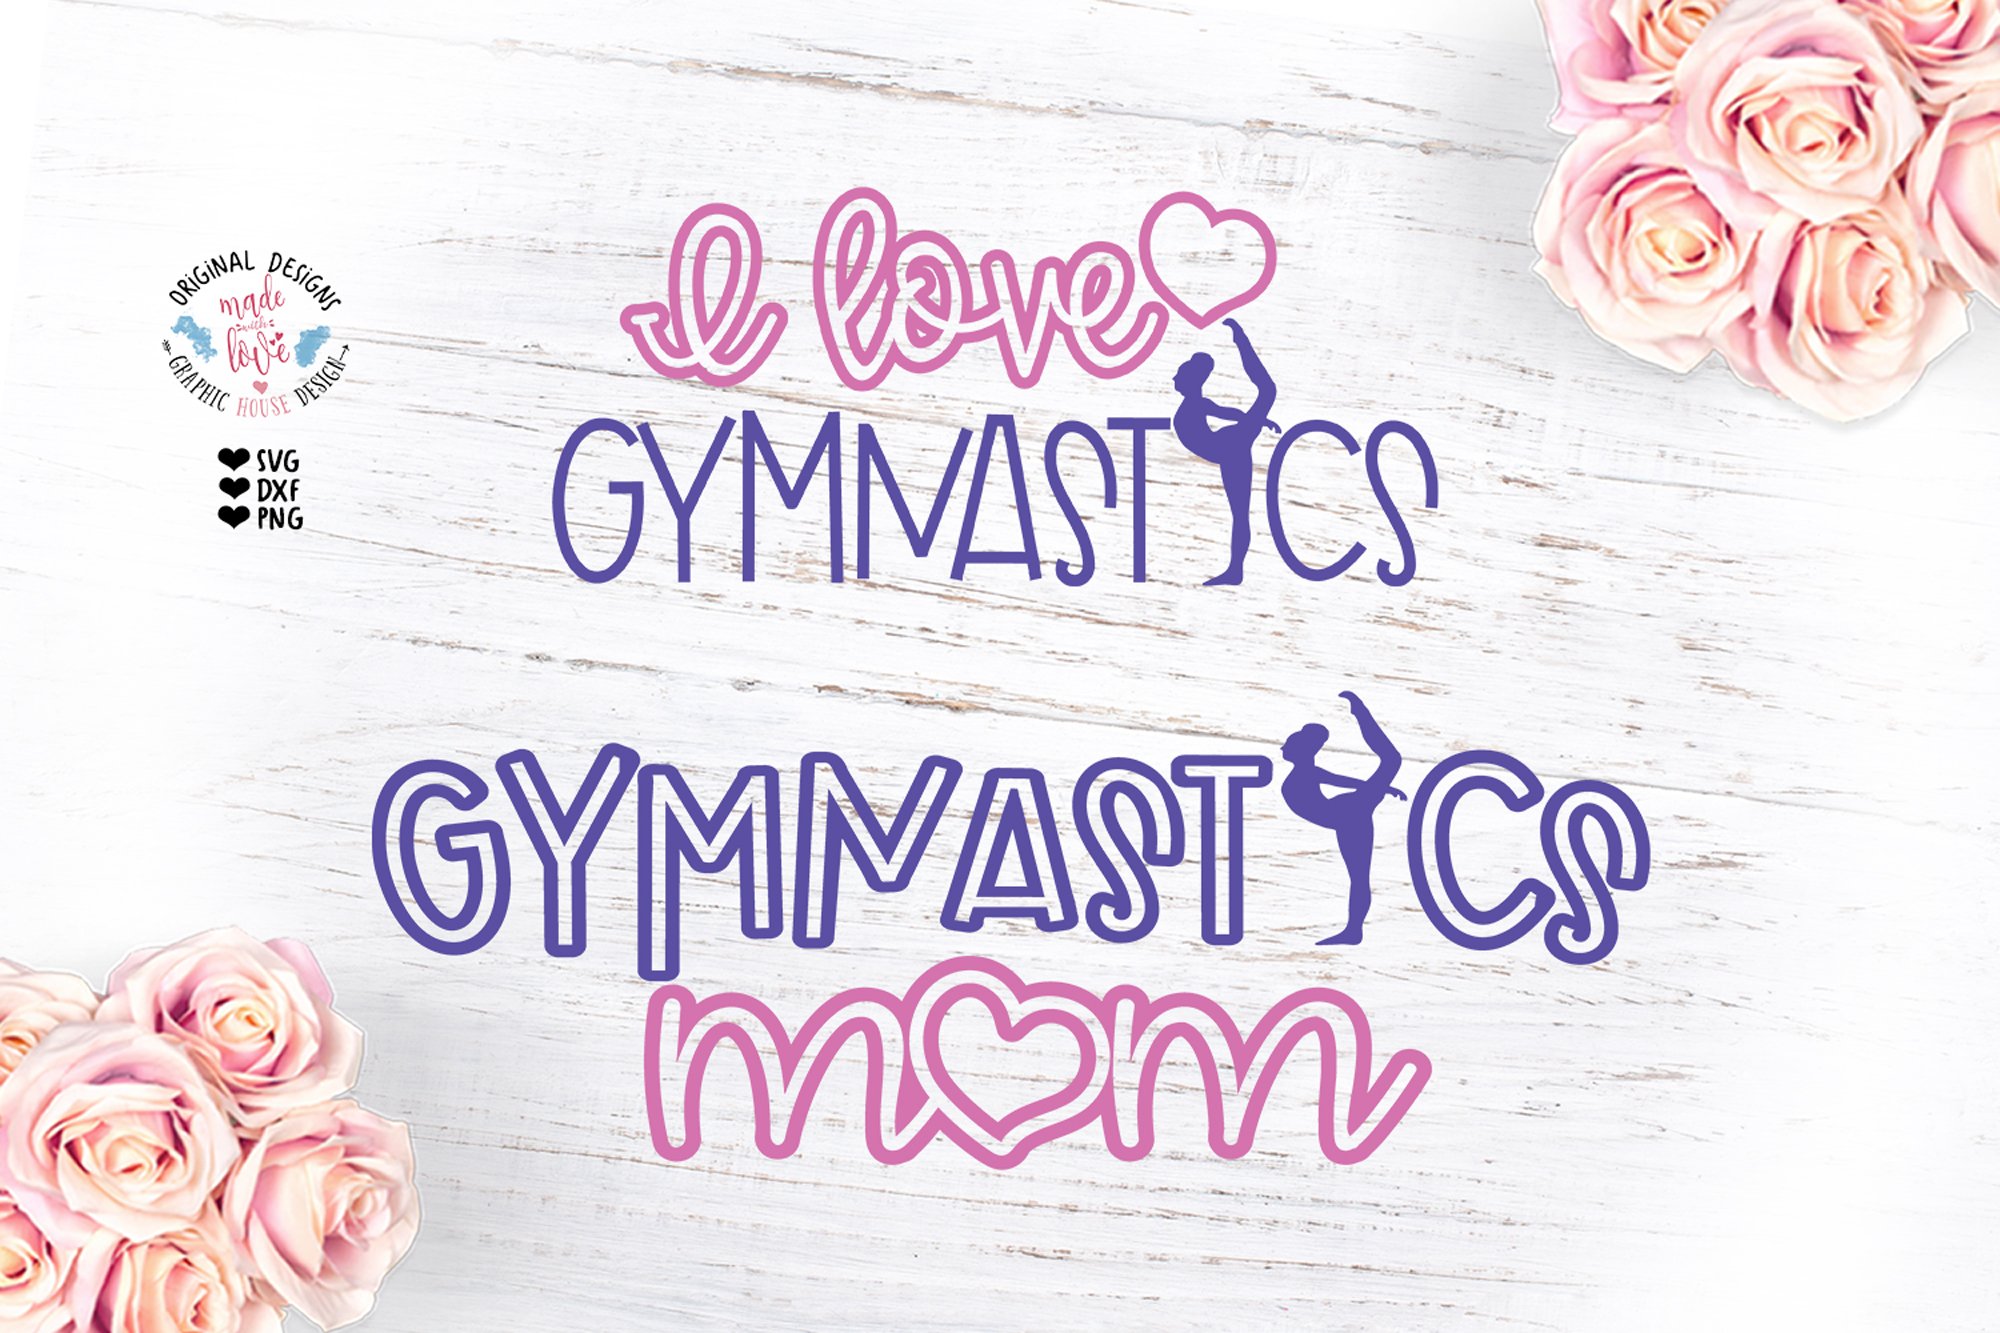 I love Gymnastics - Gymnastics Mom cover image.